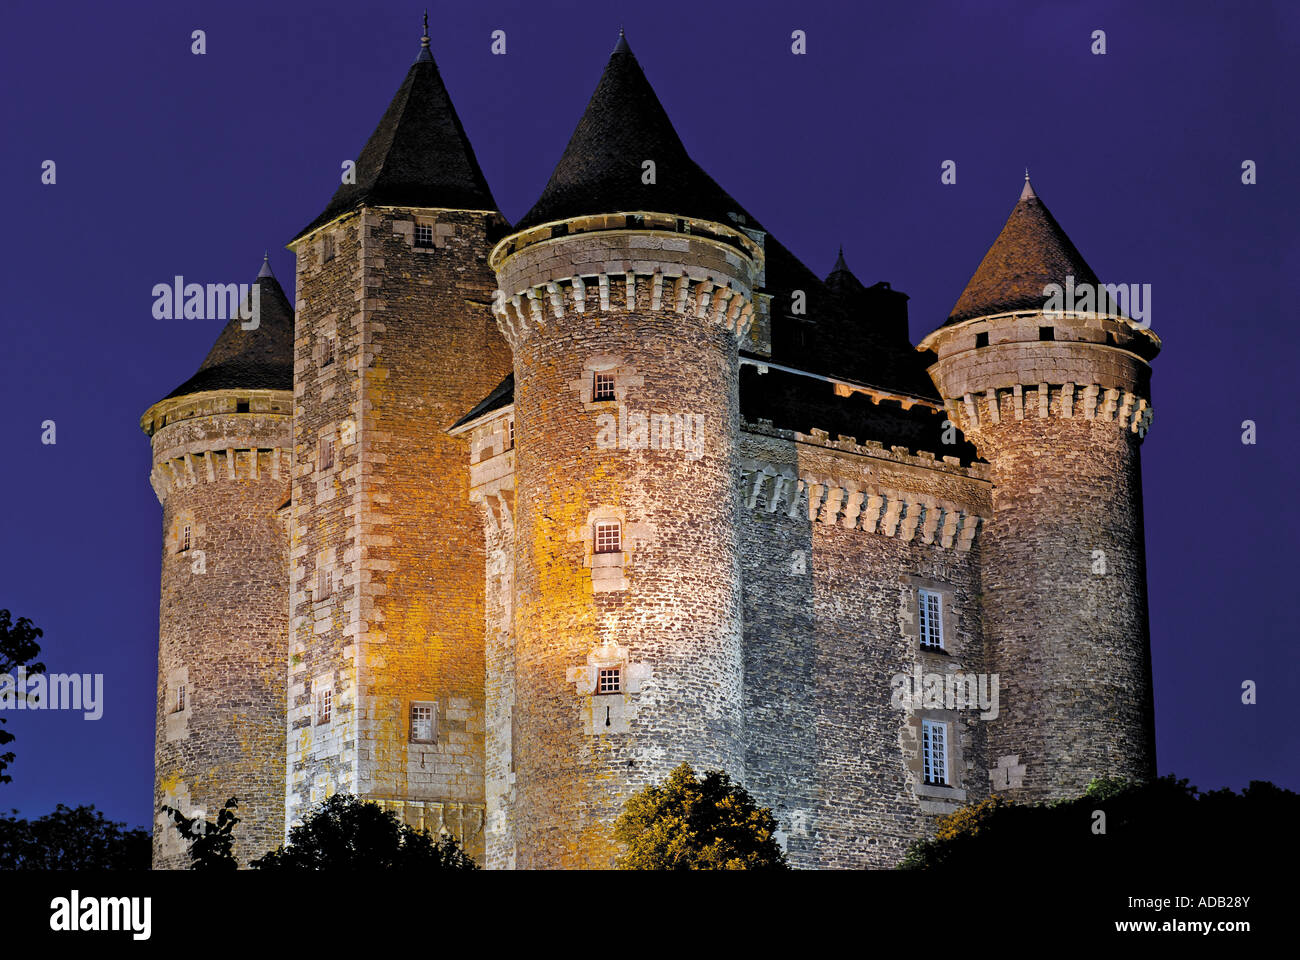 Medieval castle Chateau de Bousquet by night, Bousquet, Laguiole, Aveyron, Midi-Pyrenees, France Stock Photo